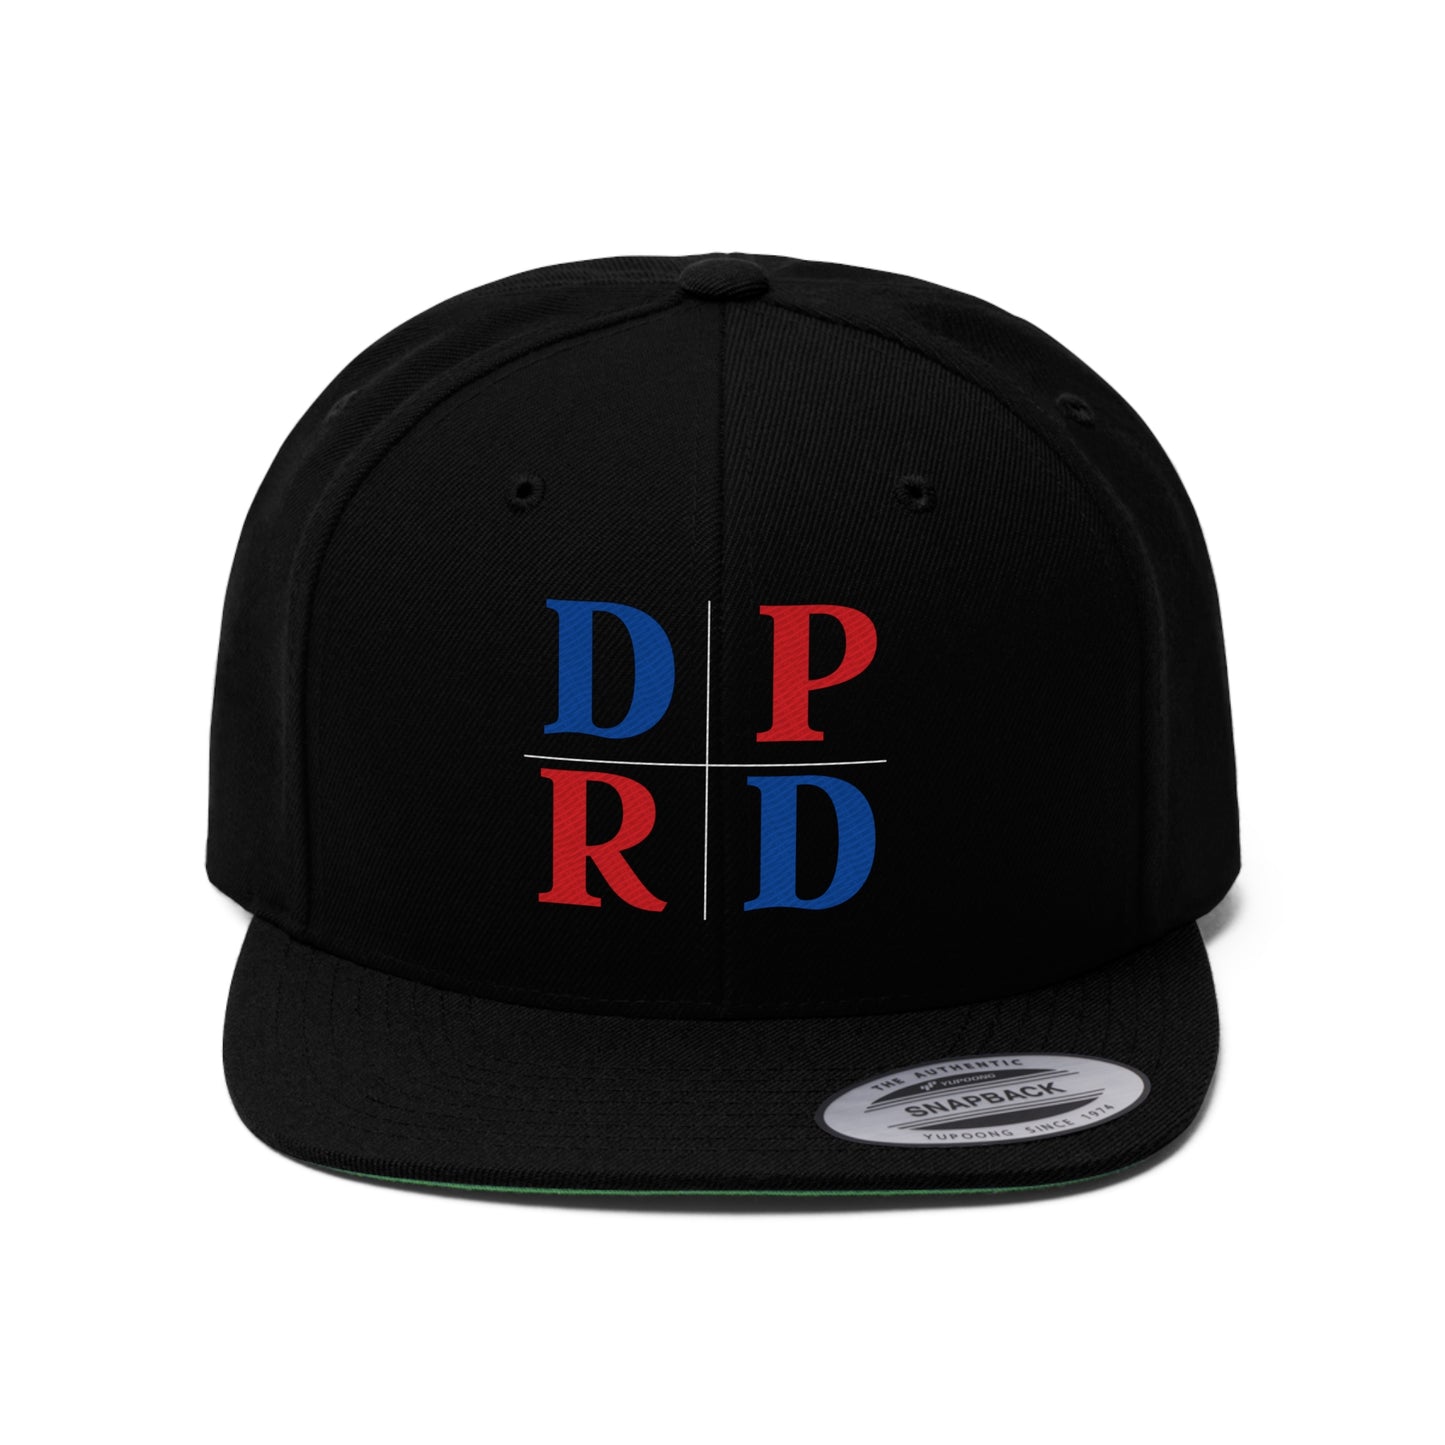 DPRD Cross Unisex Flat Bill Hat